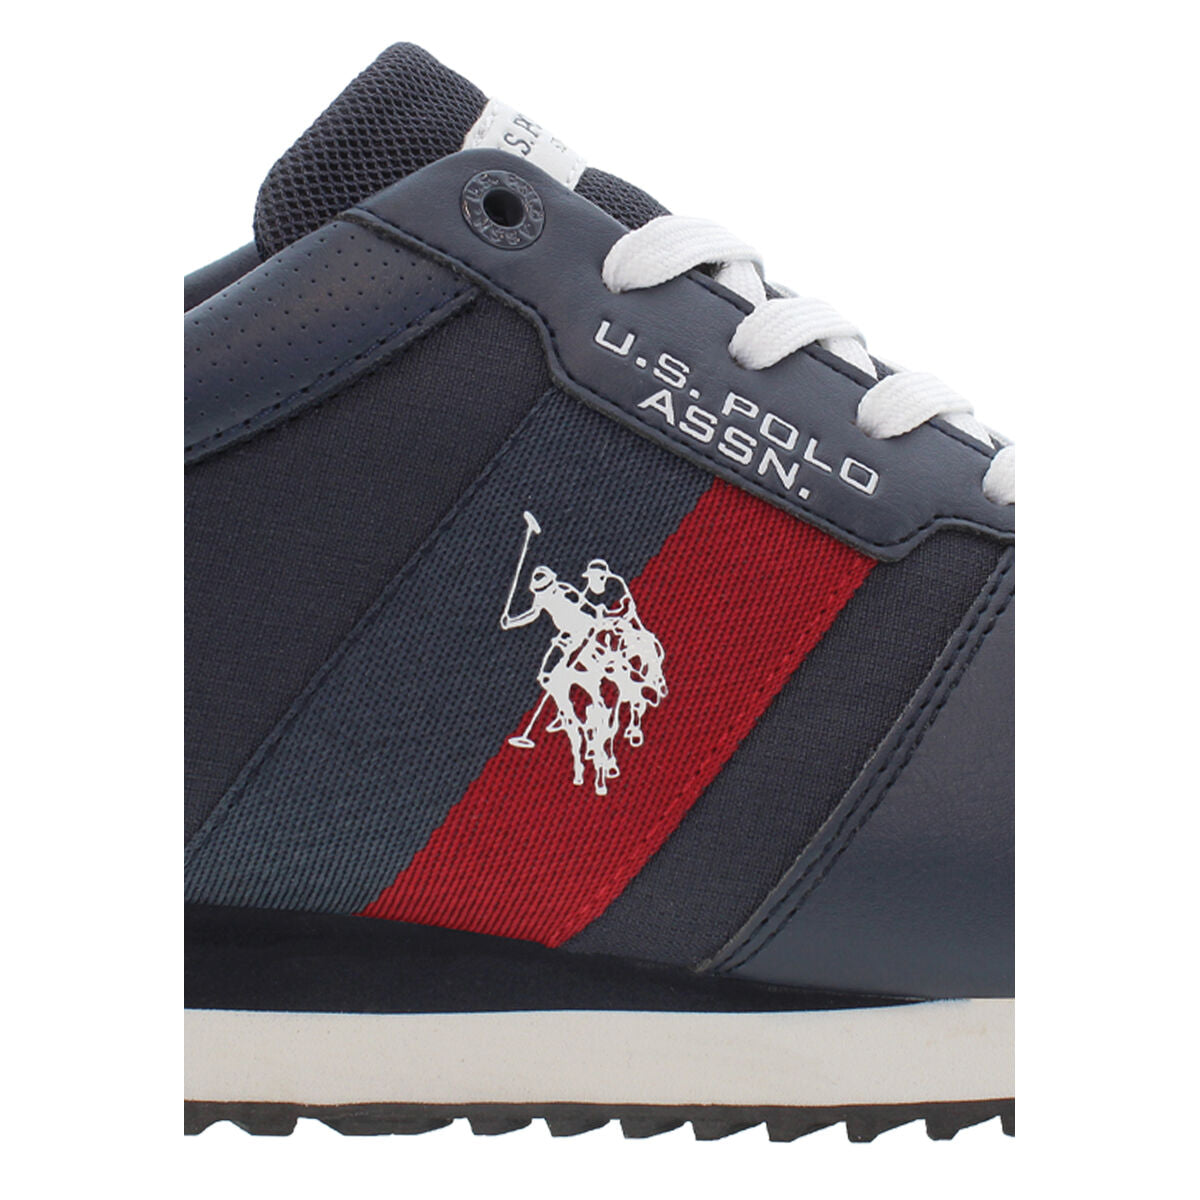 Chaussures de Sport pour Homme U.S. Polo Assn. XIRIO007 DBL001 Blue marine - U.S. Polo Assn. - Jardin D'Eyden - jardindeyden.fr